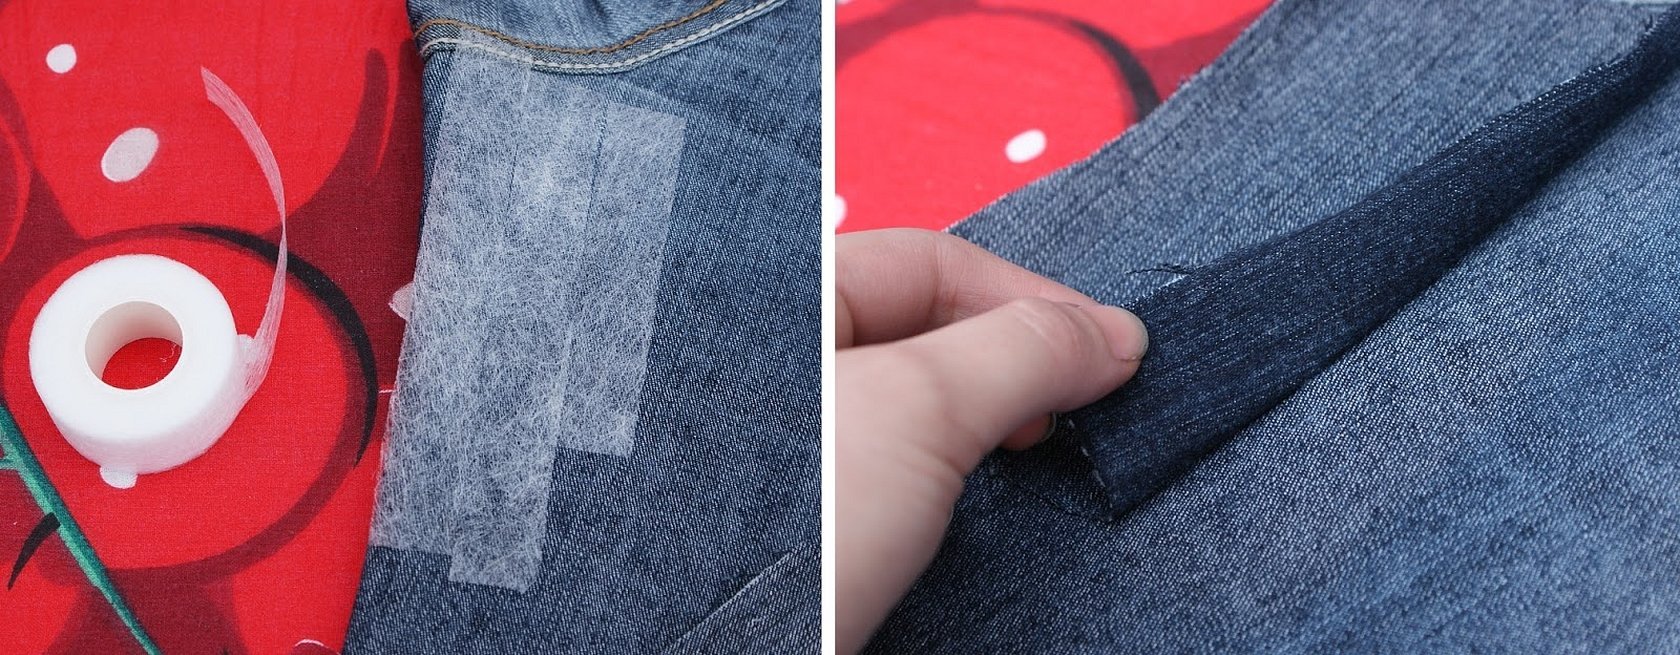 Как приклеить паутинку на ткань утюгом, как использовать для ремонта одежды и подгибки брюк